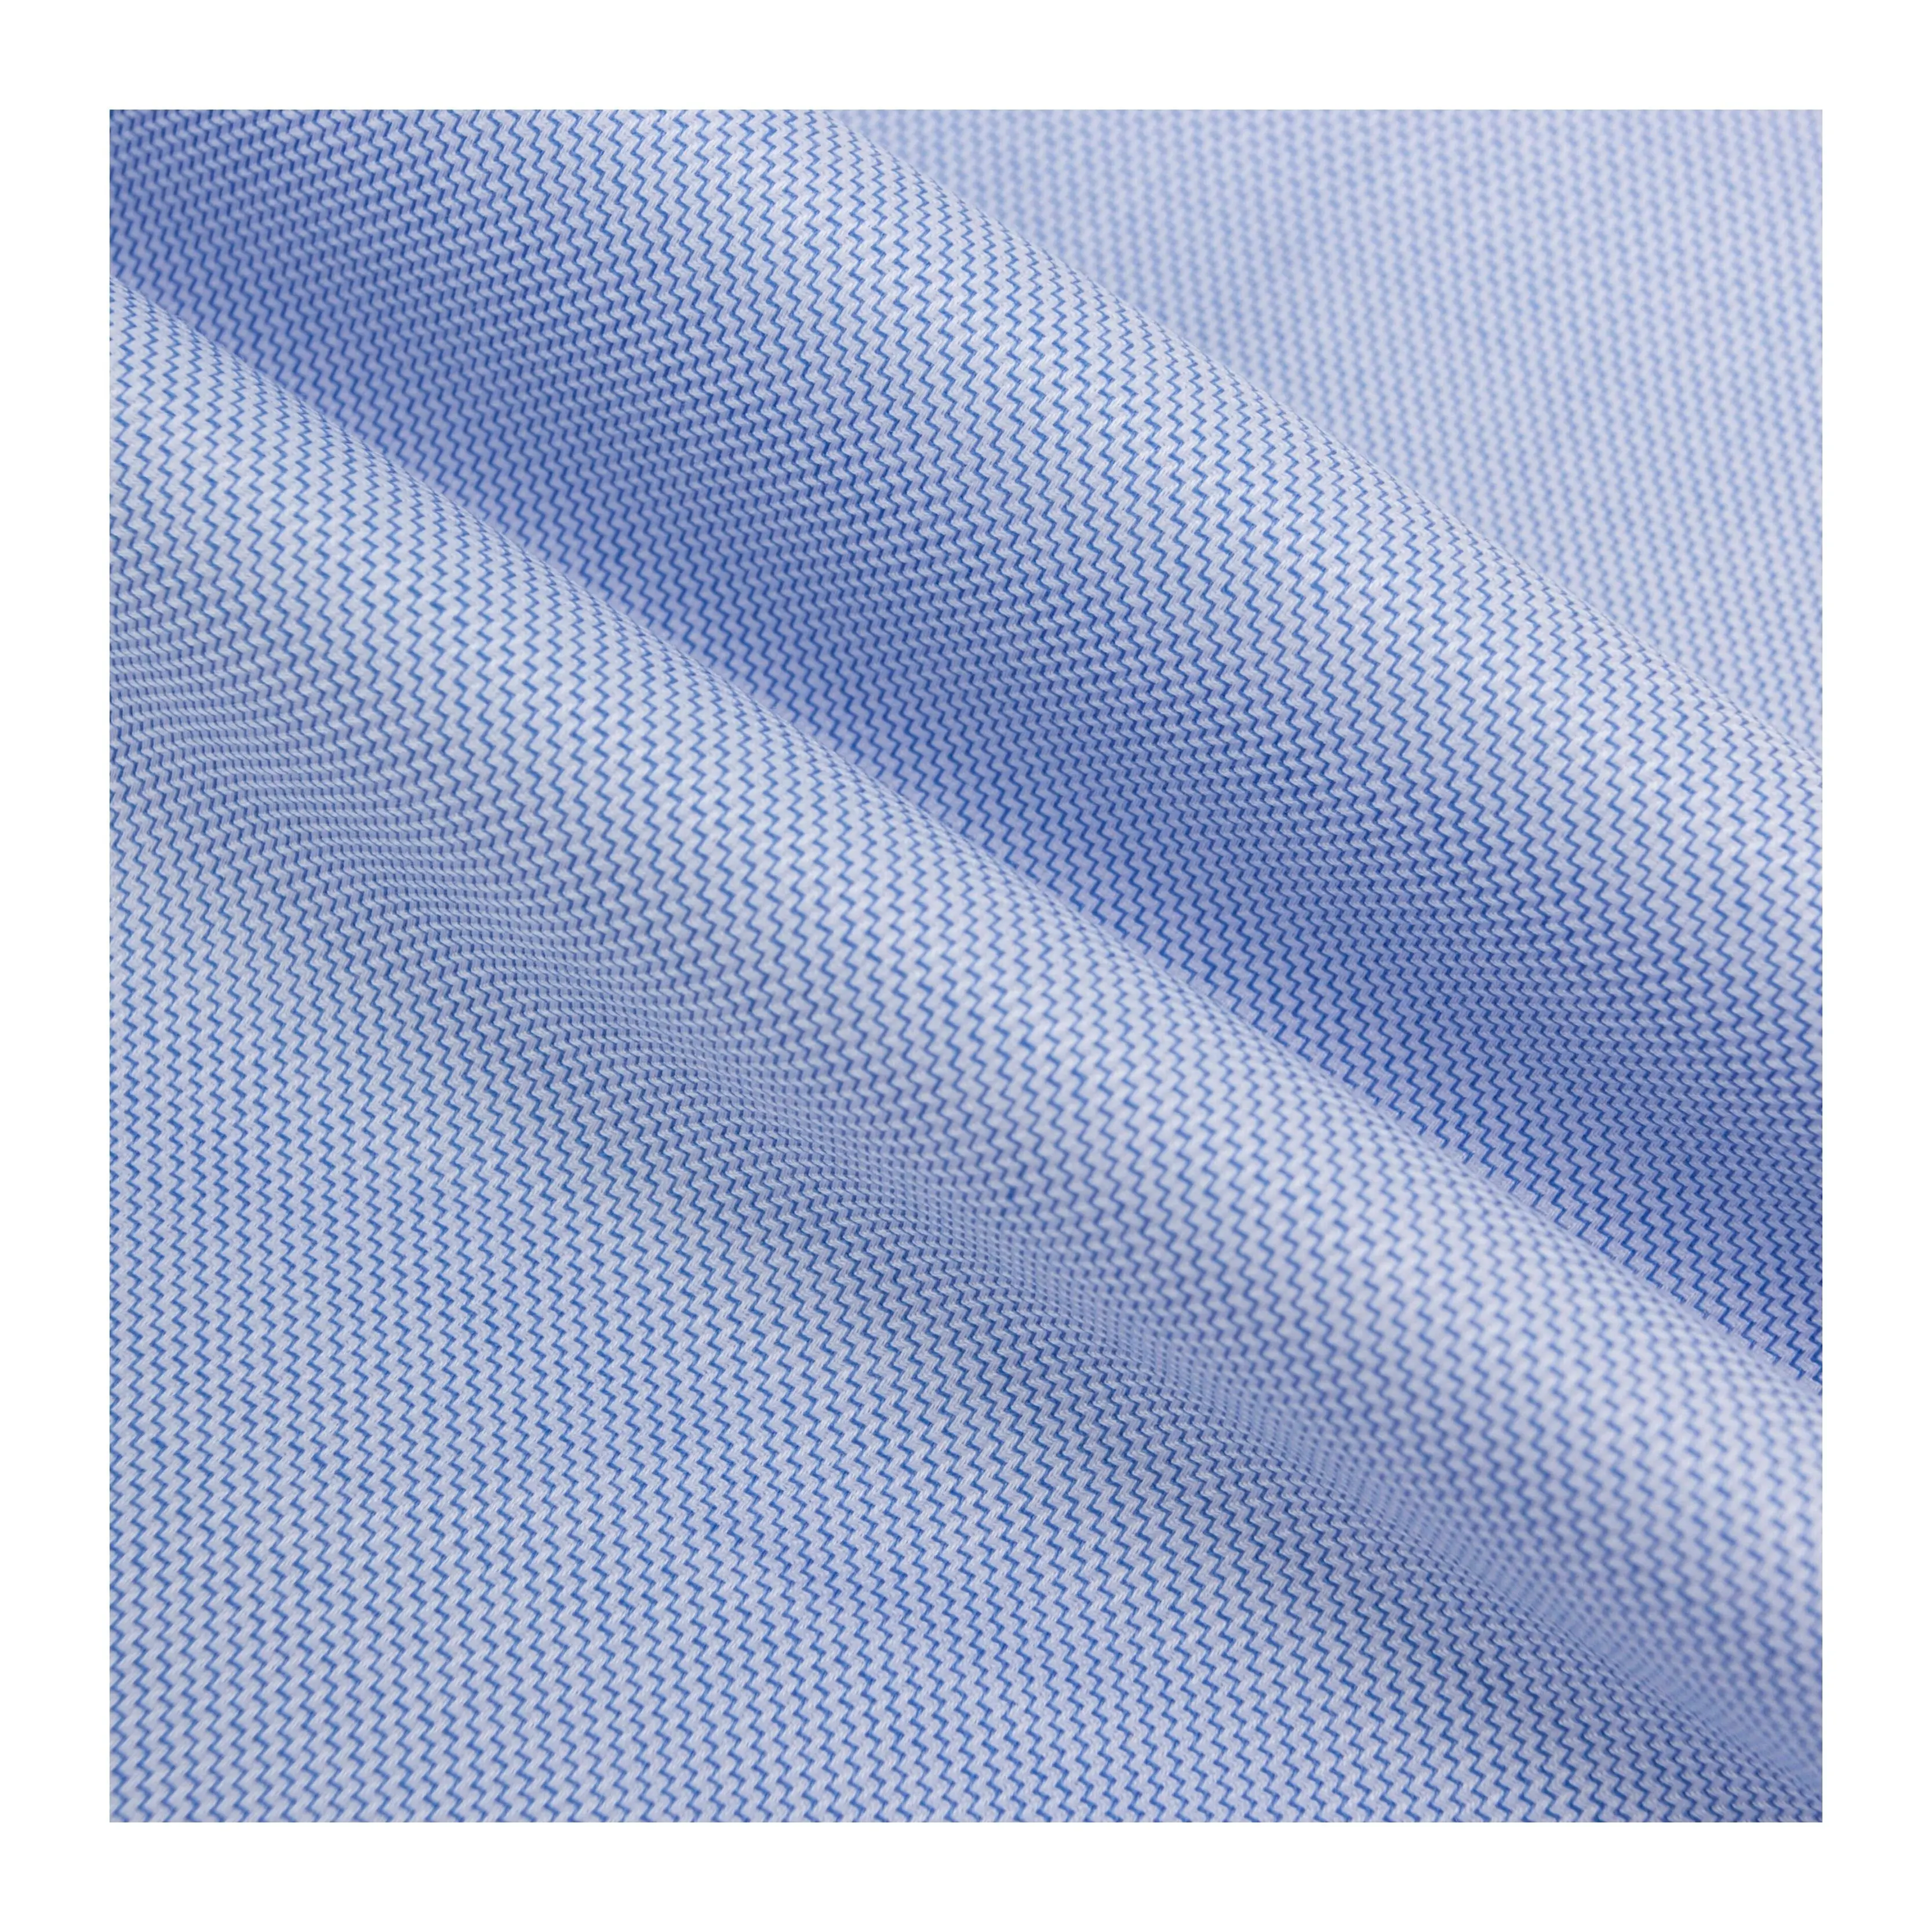 94 China textil antiarrugas azul y blanco amoníaco líquido onda 100 algodón tejido camisa tela para prendas de lujo